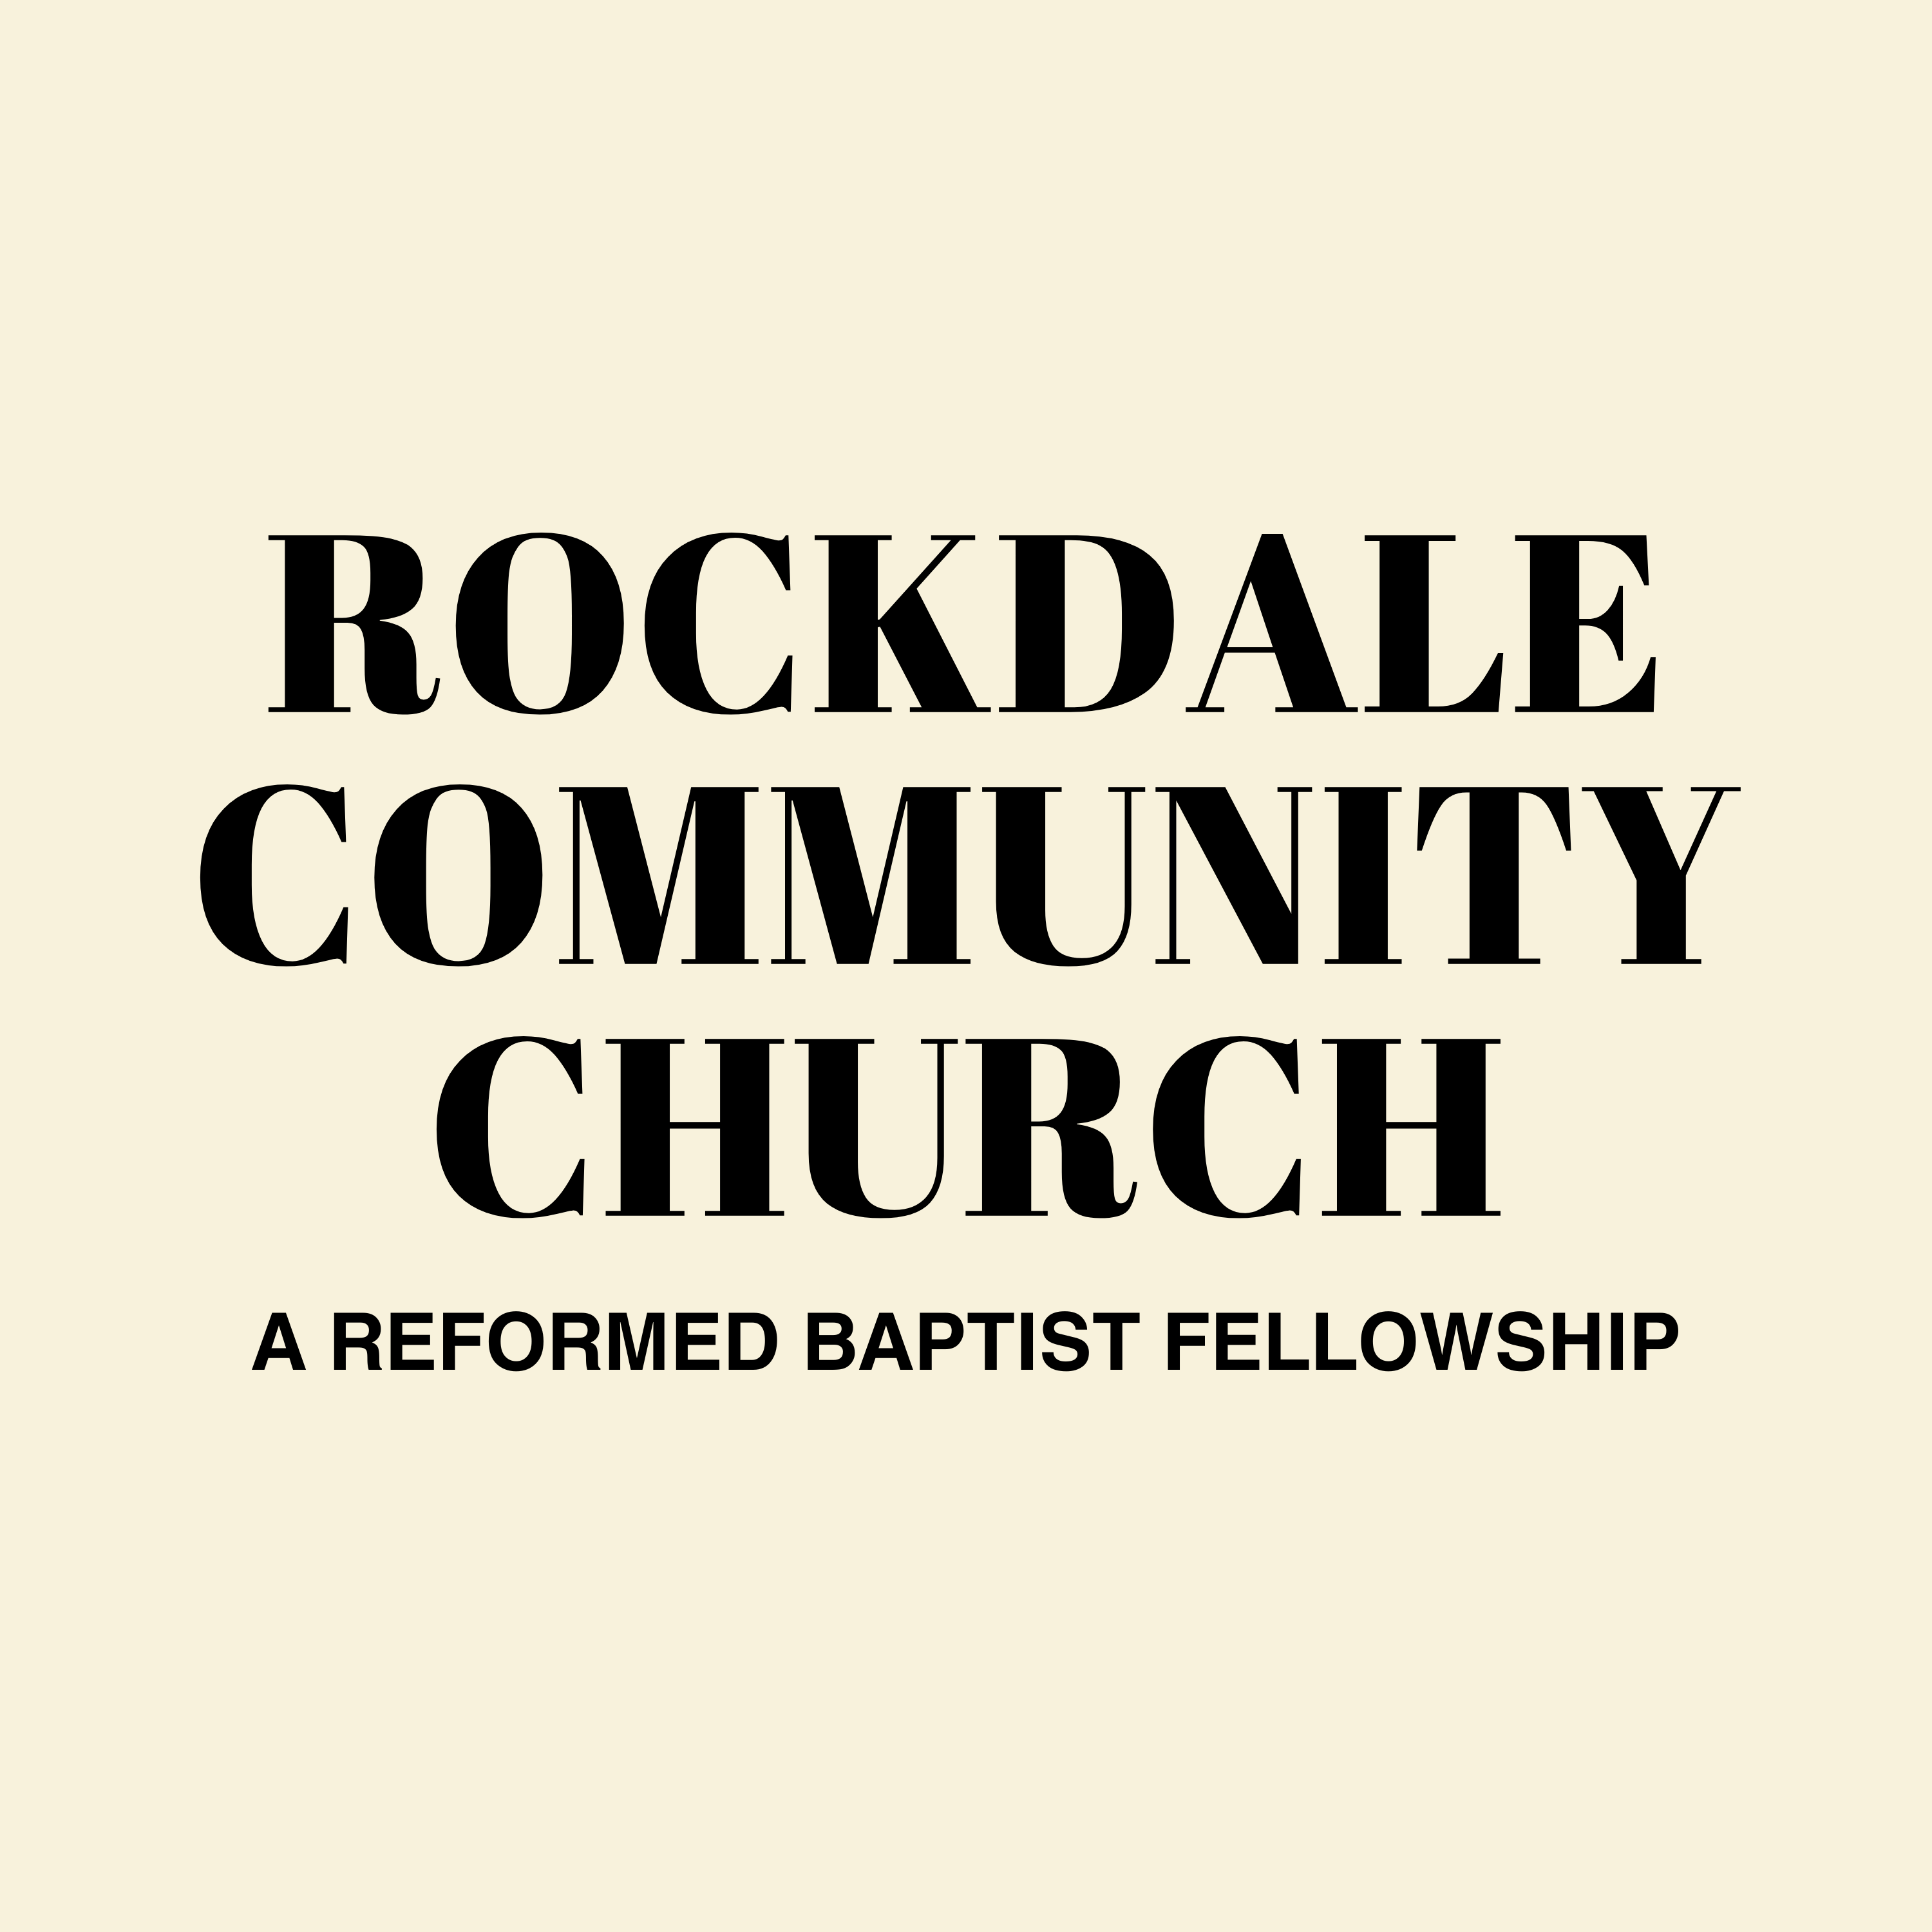 Rockdale Community Church